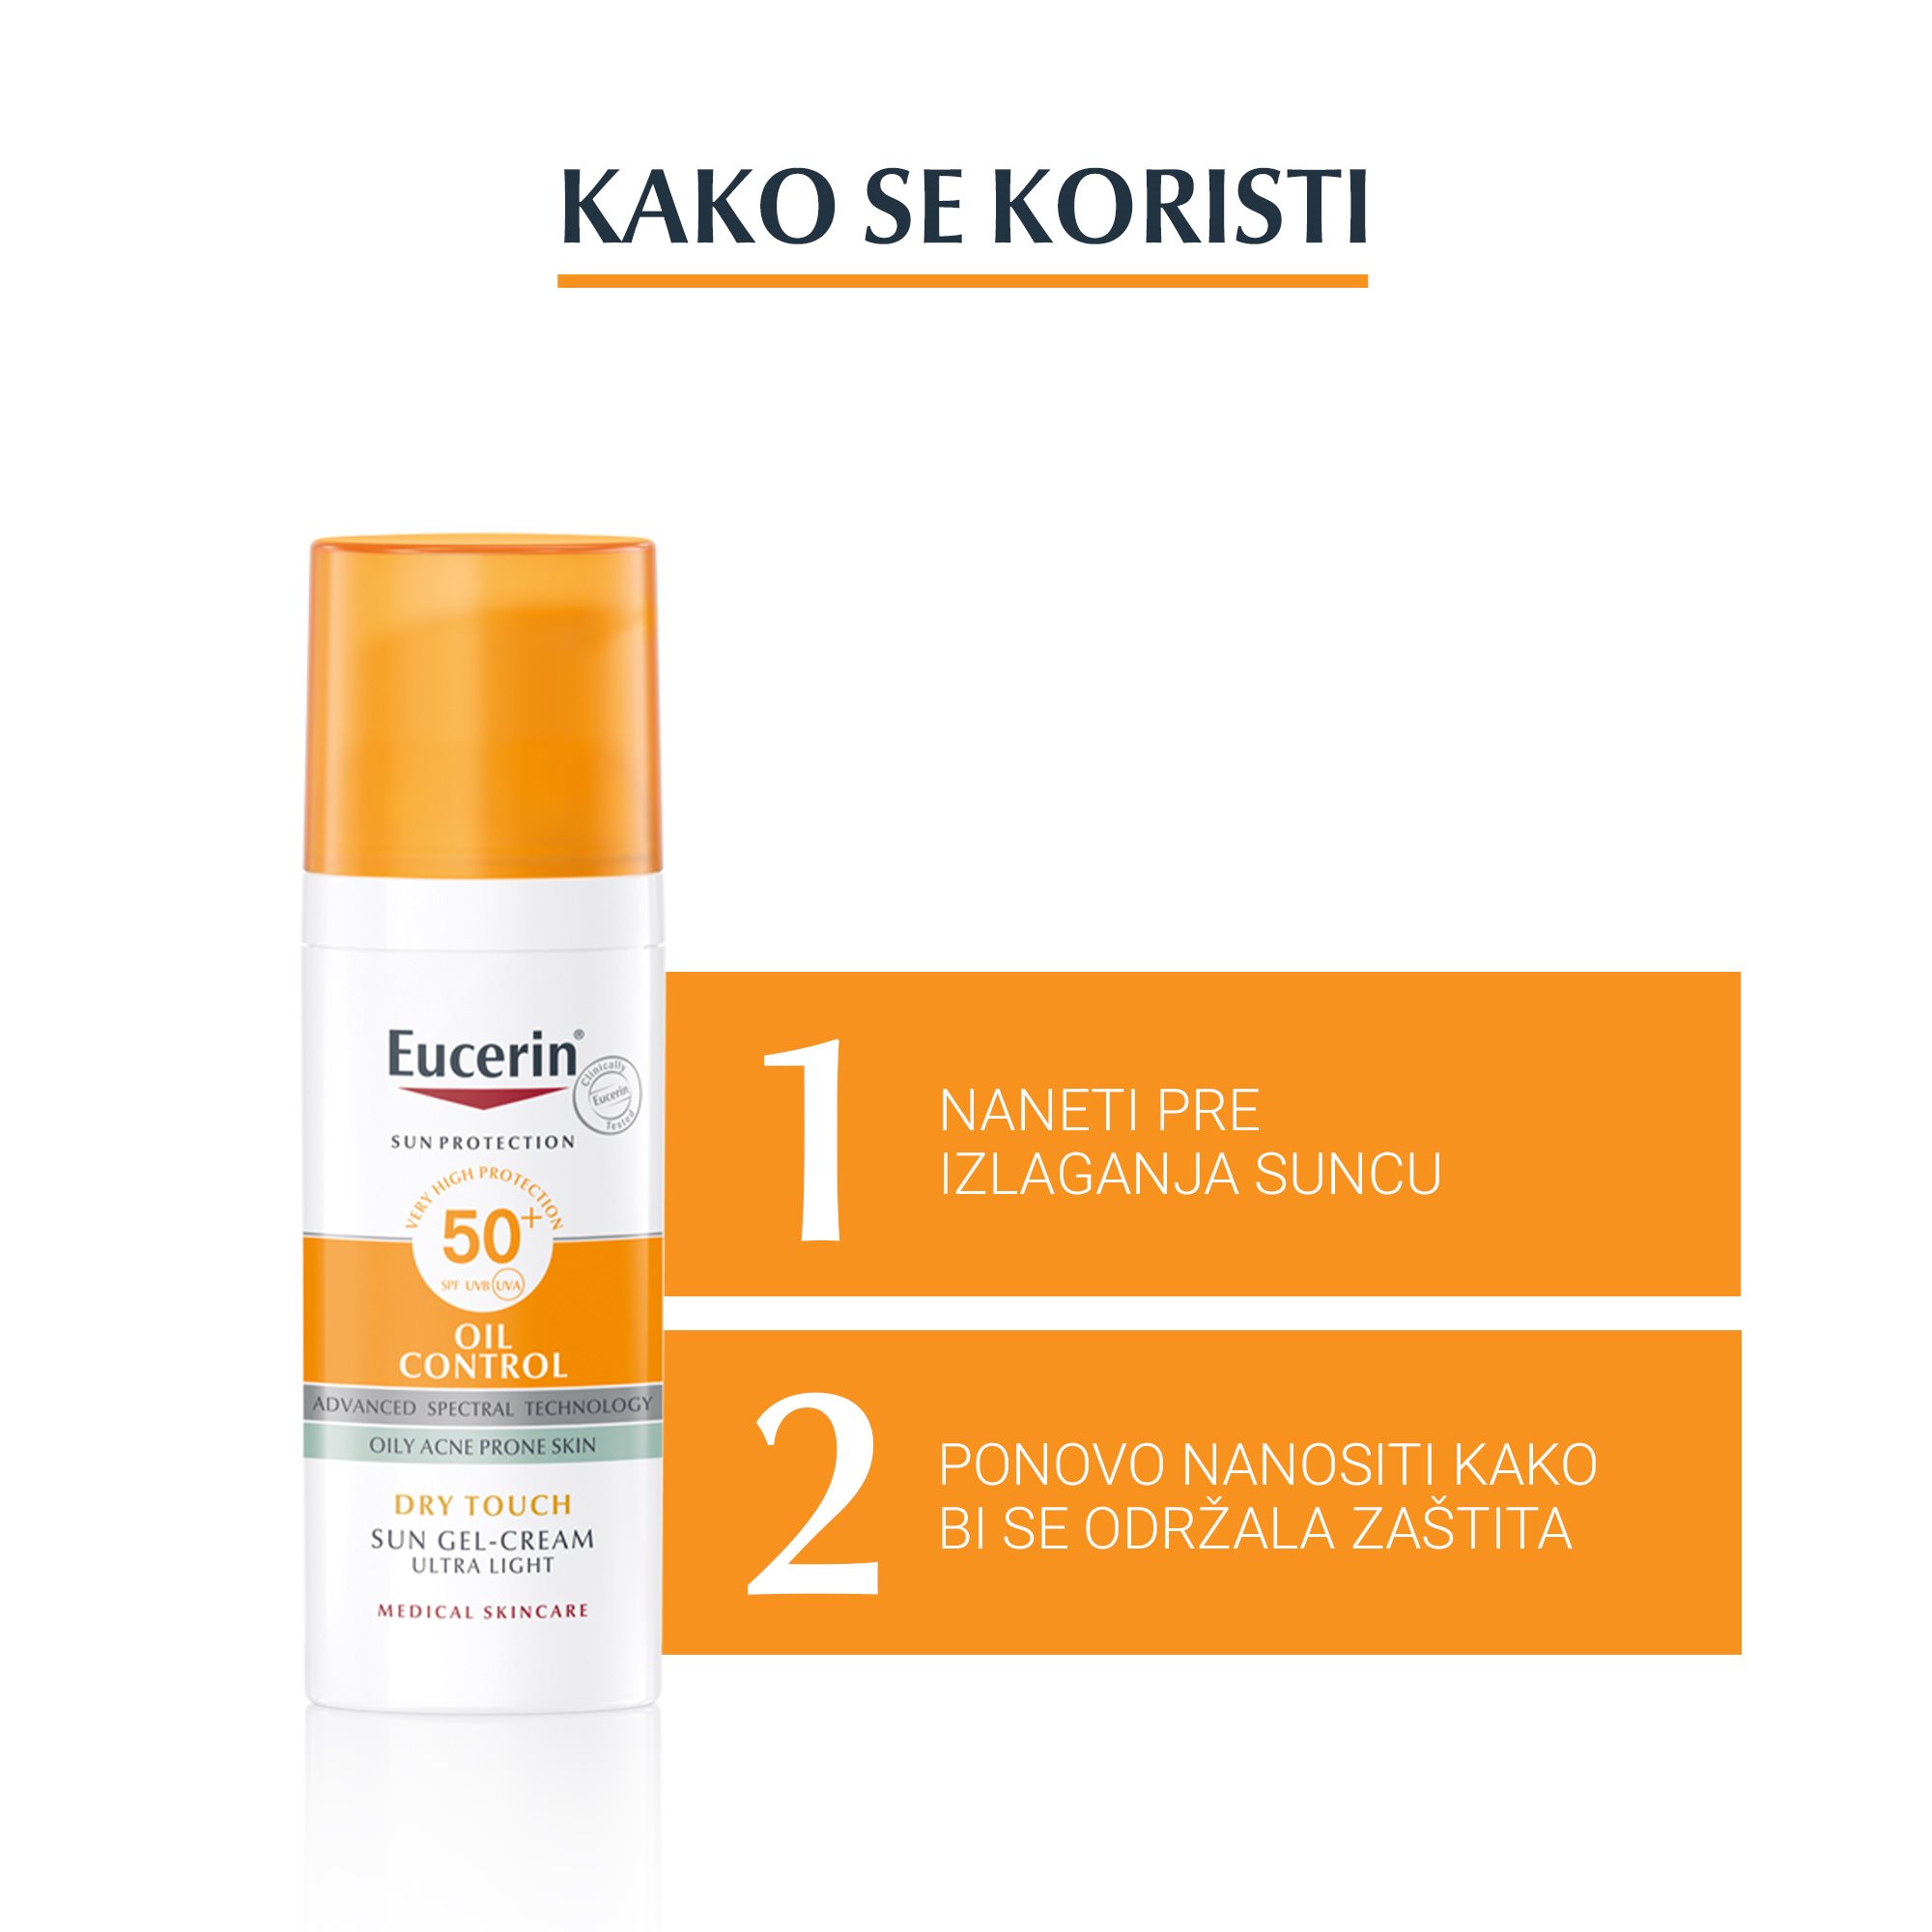 Eucerin Oil control za zaštitu masne kože od sunca SPF 50+ - Kako se koristi